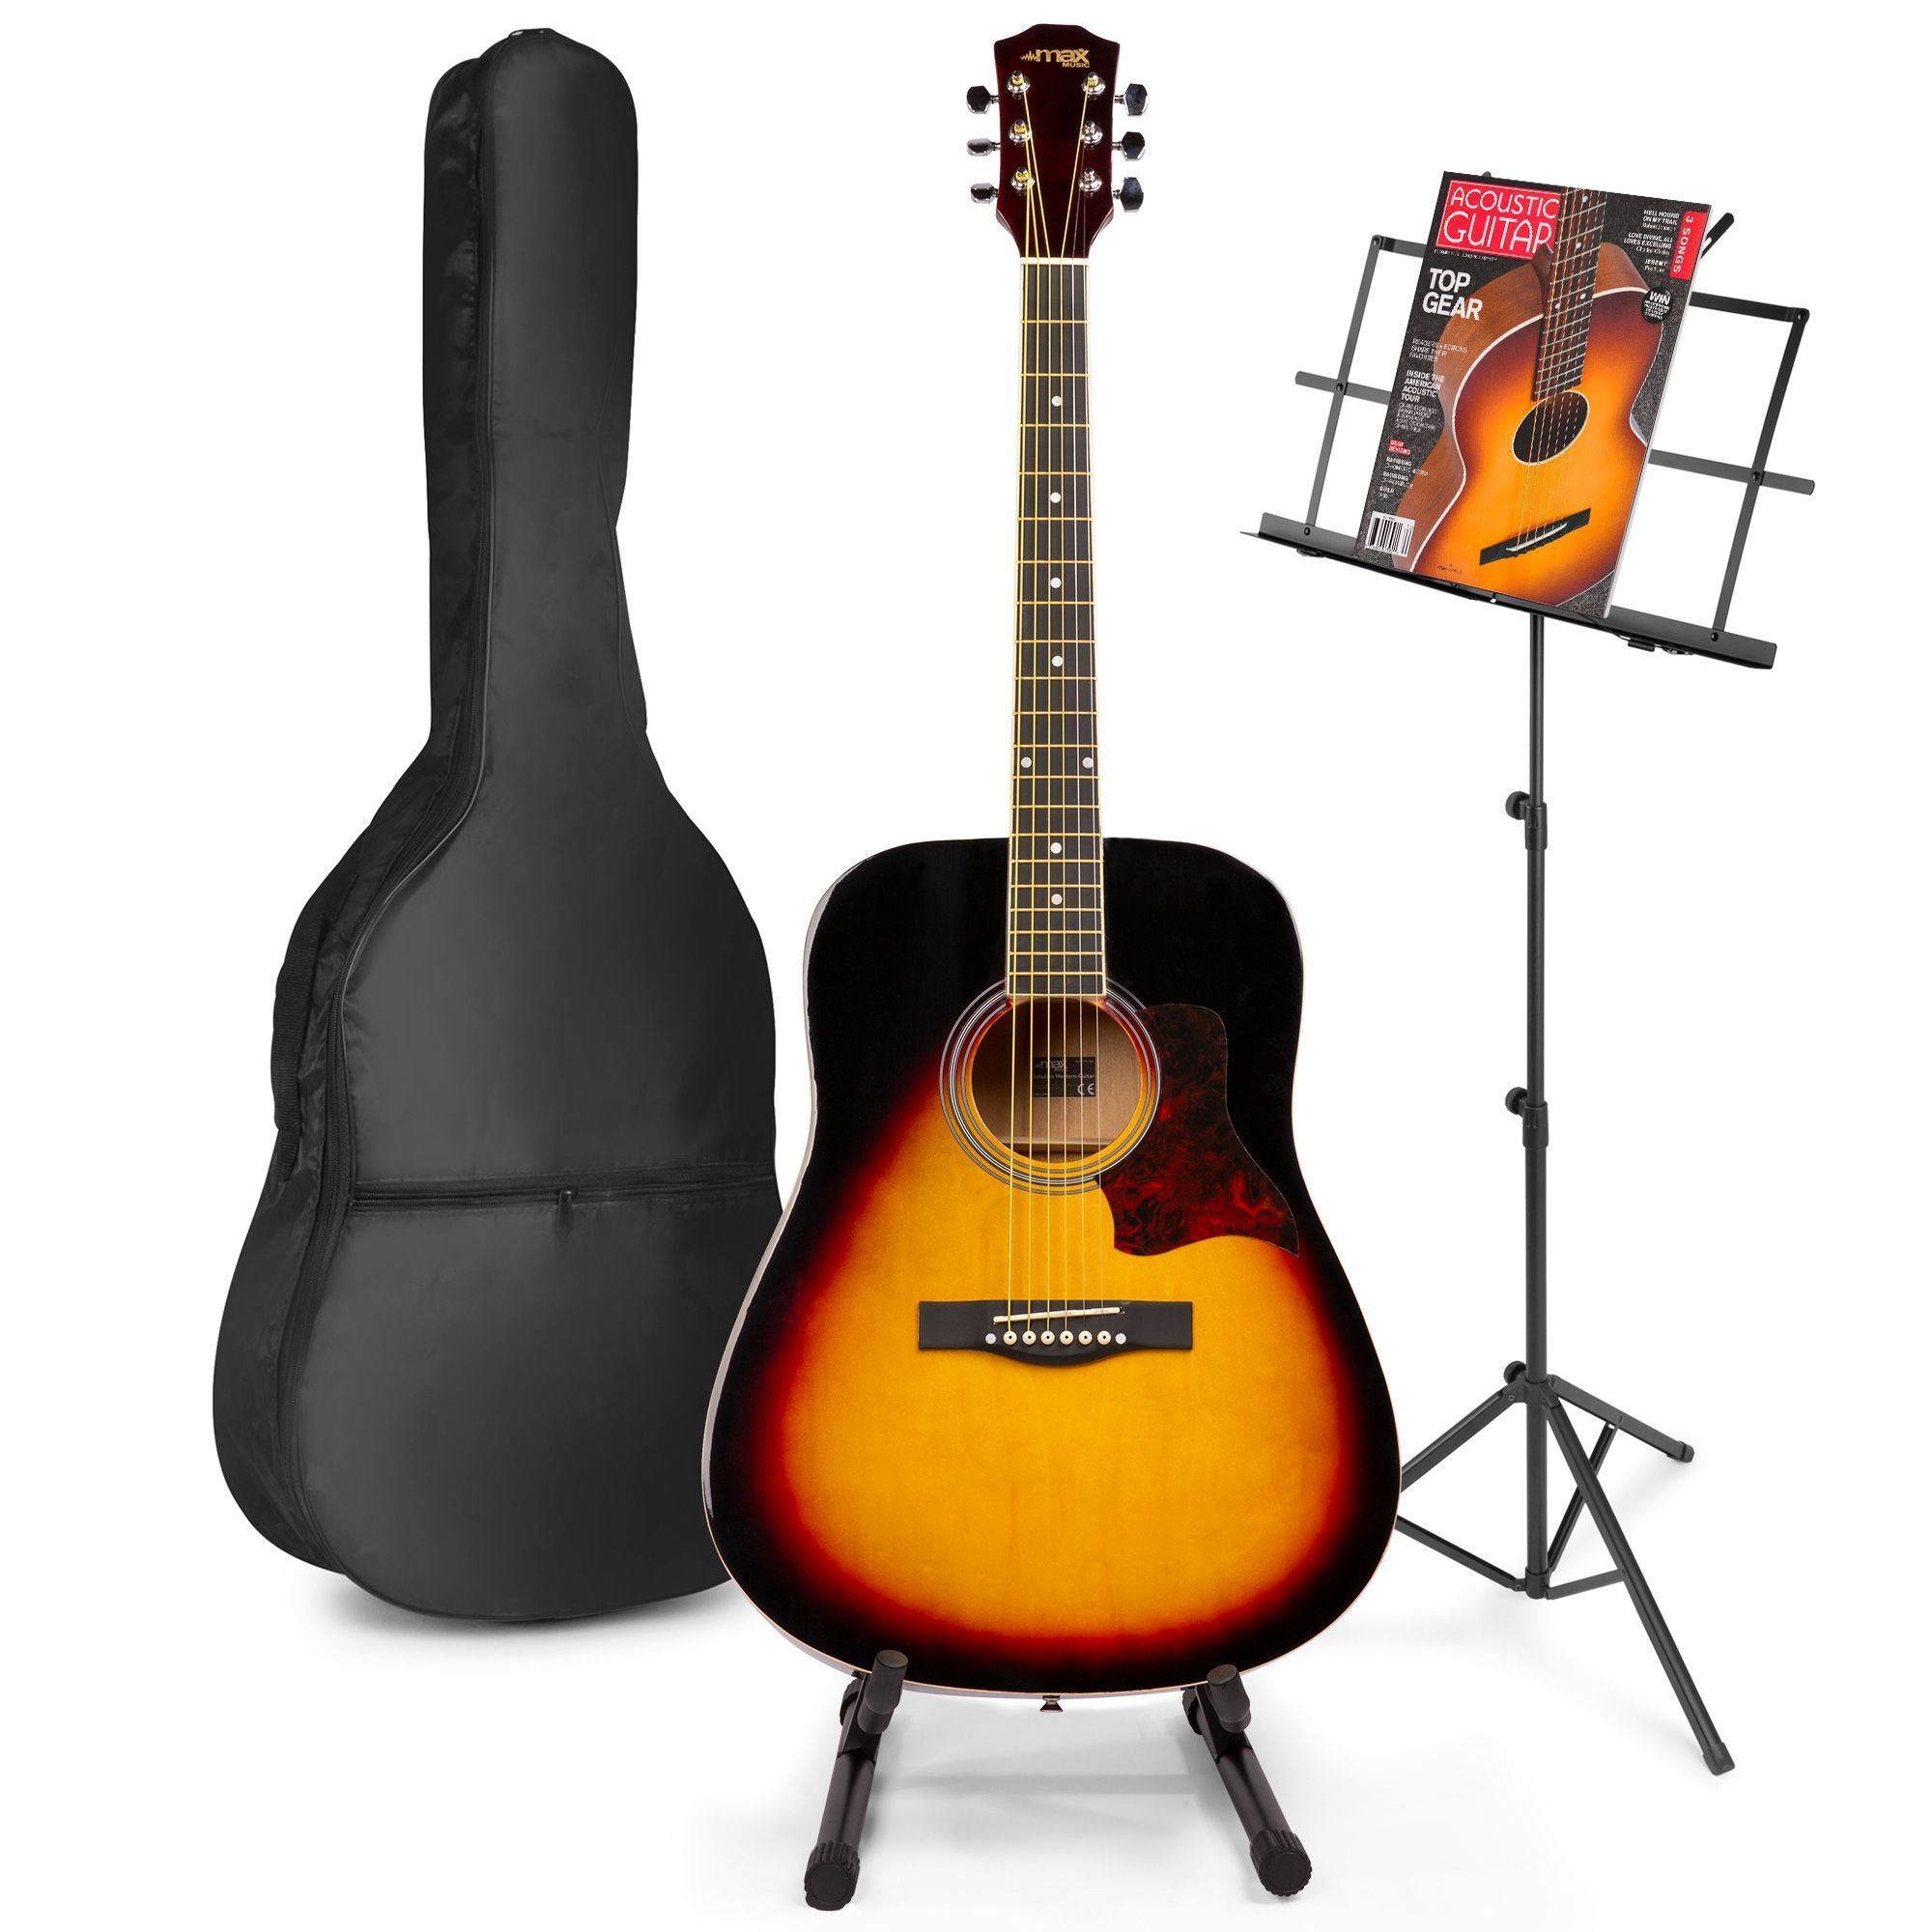 MAX Western akoestische gitaar met muziek- en gitaarstandaard - kopen?